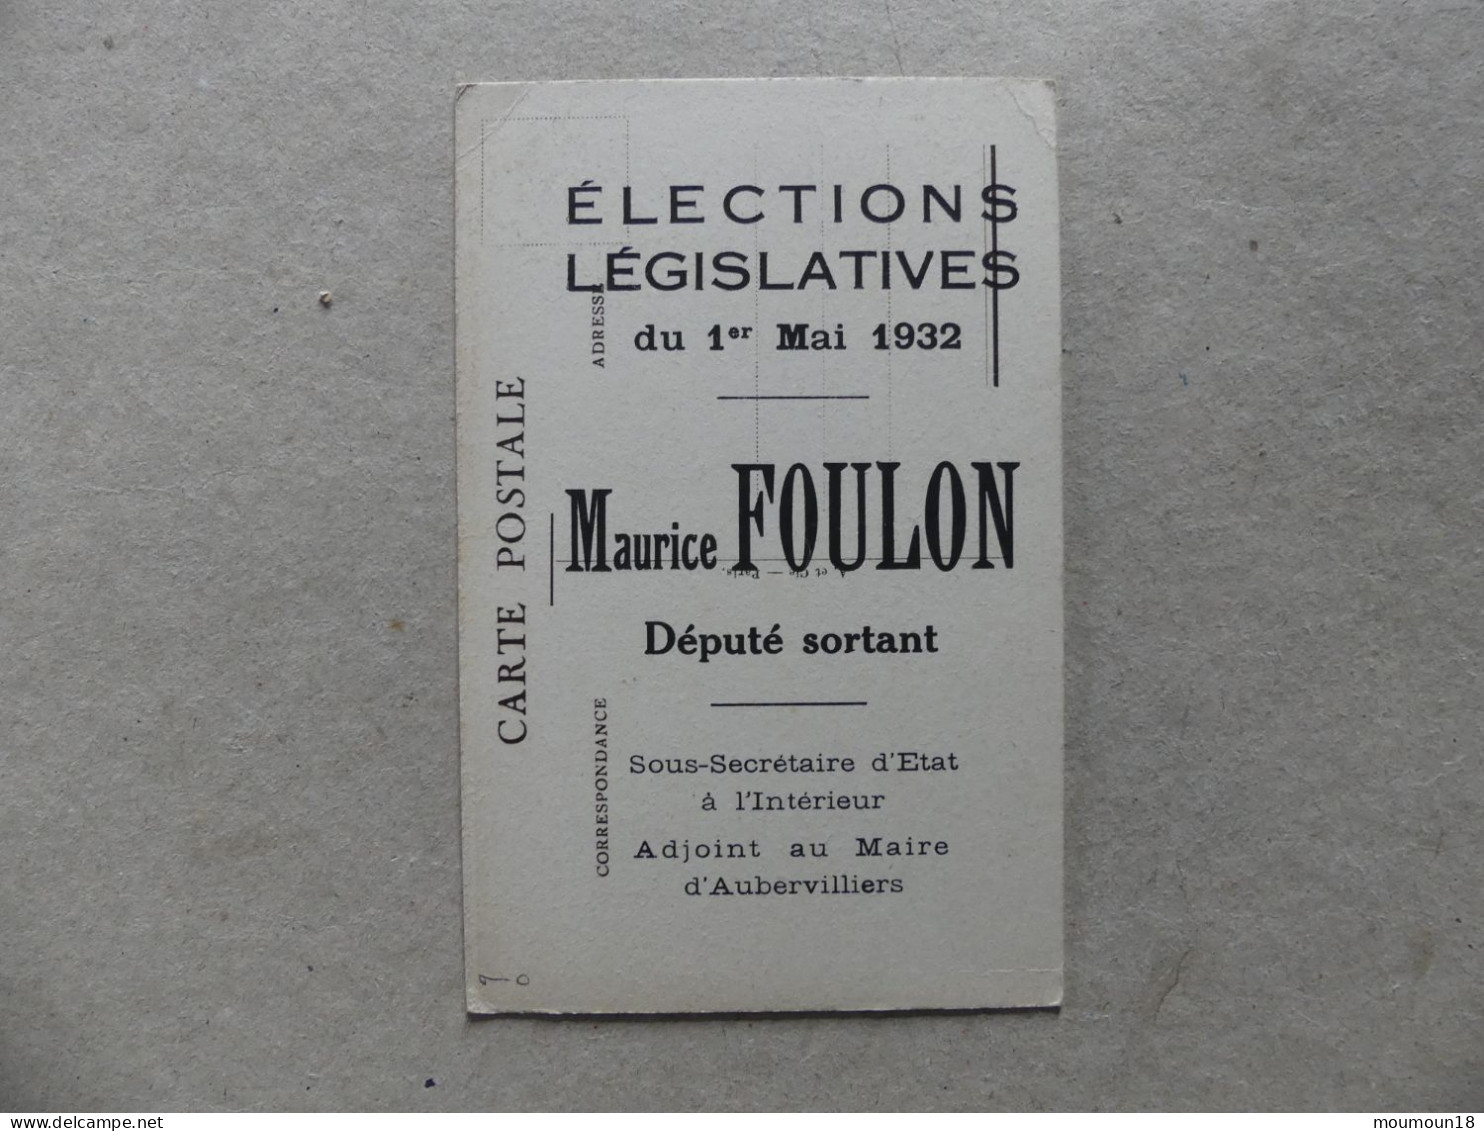 Maurice Foulon Elections Législatives 1932 Député Sortant Sous-Secrétaire D'Etat Intérieur Adjoint Maire Aubervilliers - Politische Und Militärische Männer